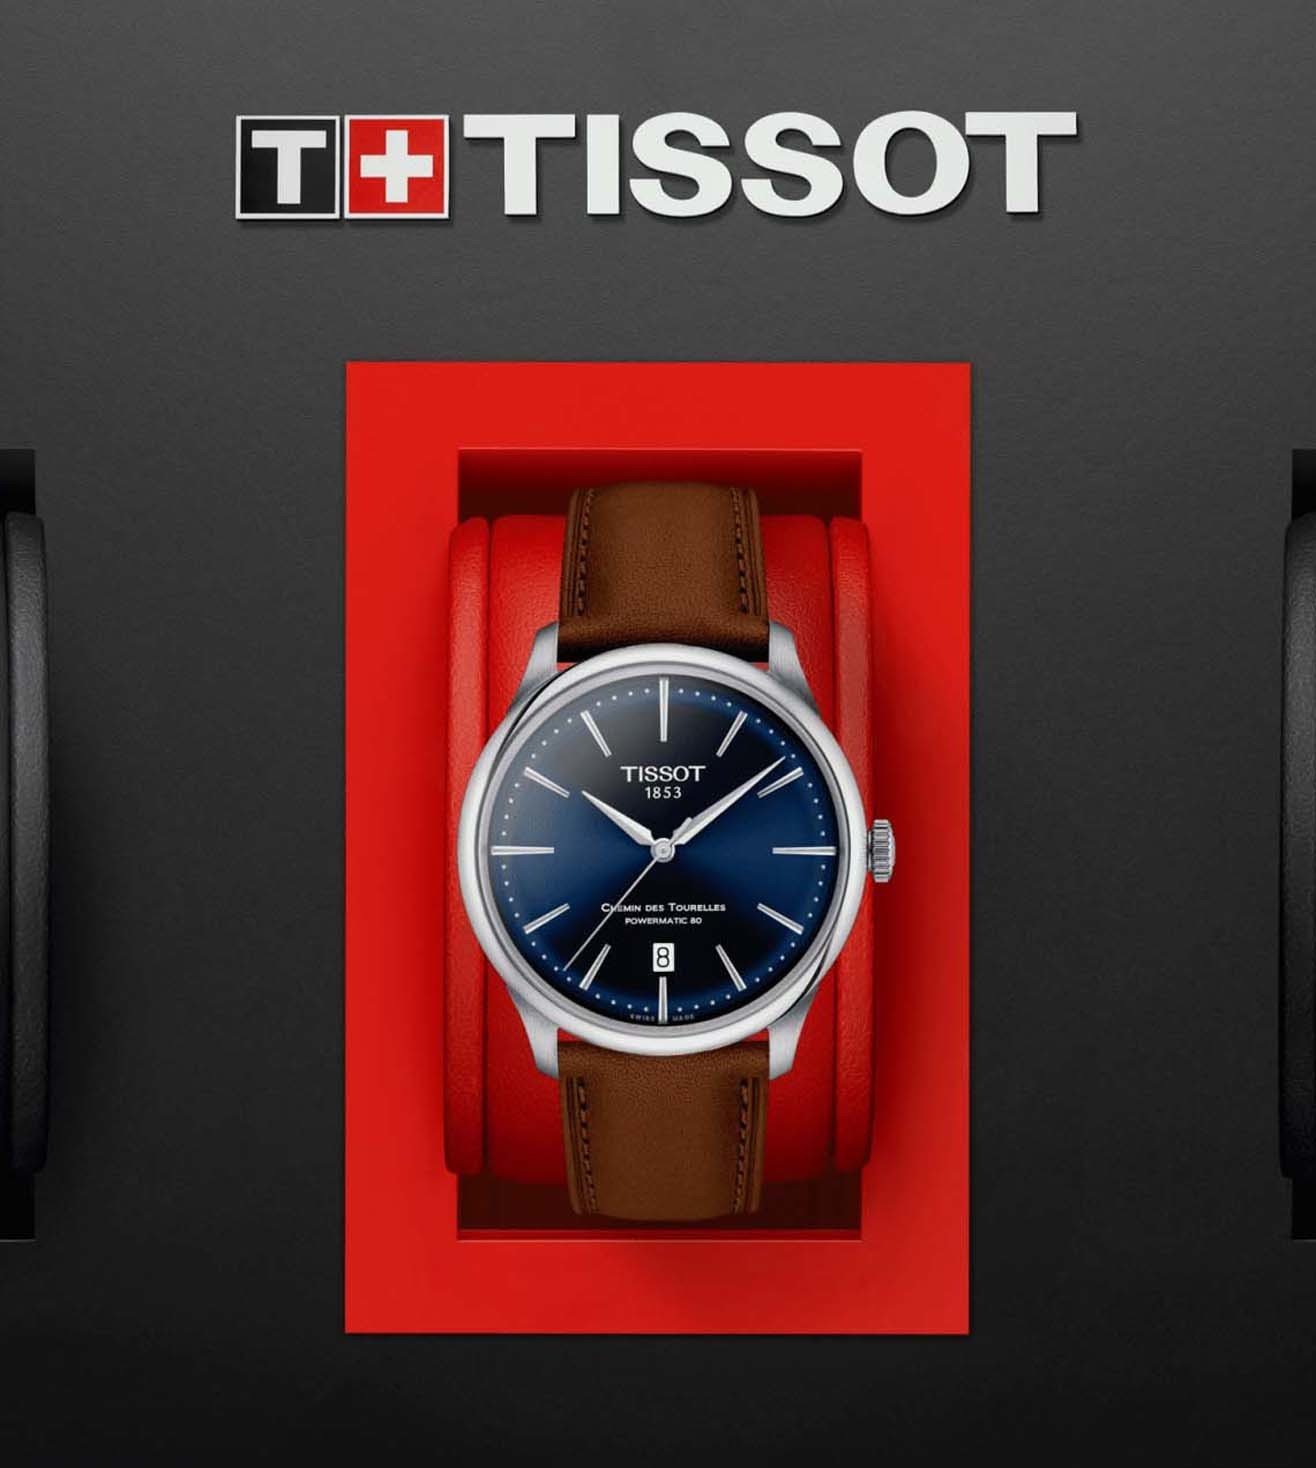 T1398071604100 |  Chemin des Tourelles T-Classic Watch for Unisex